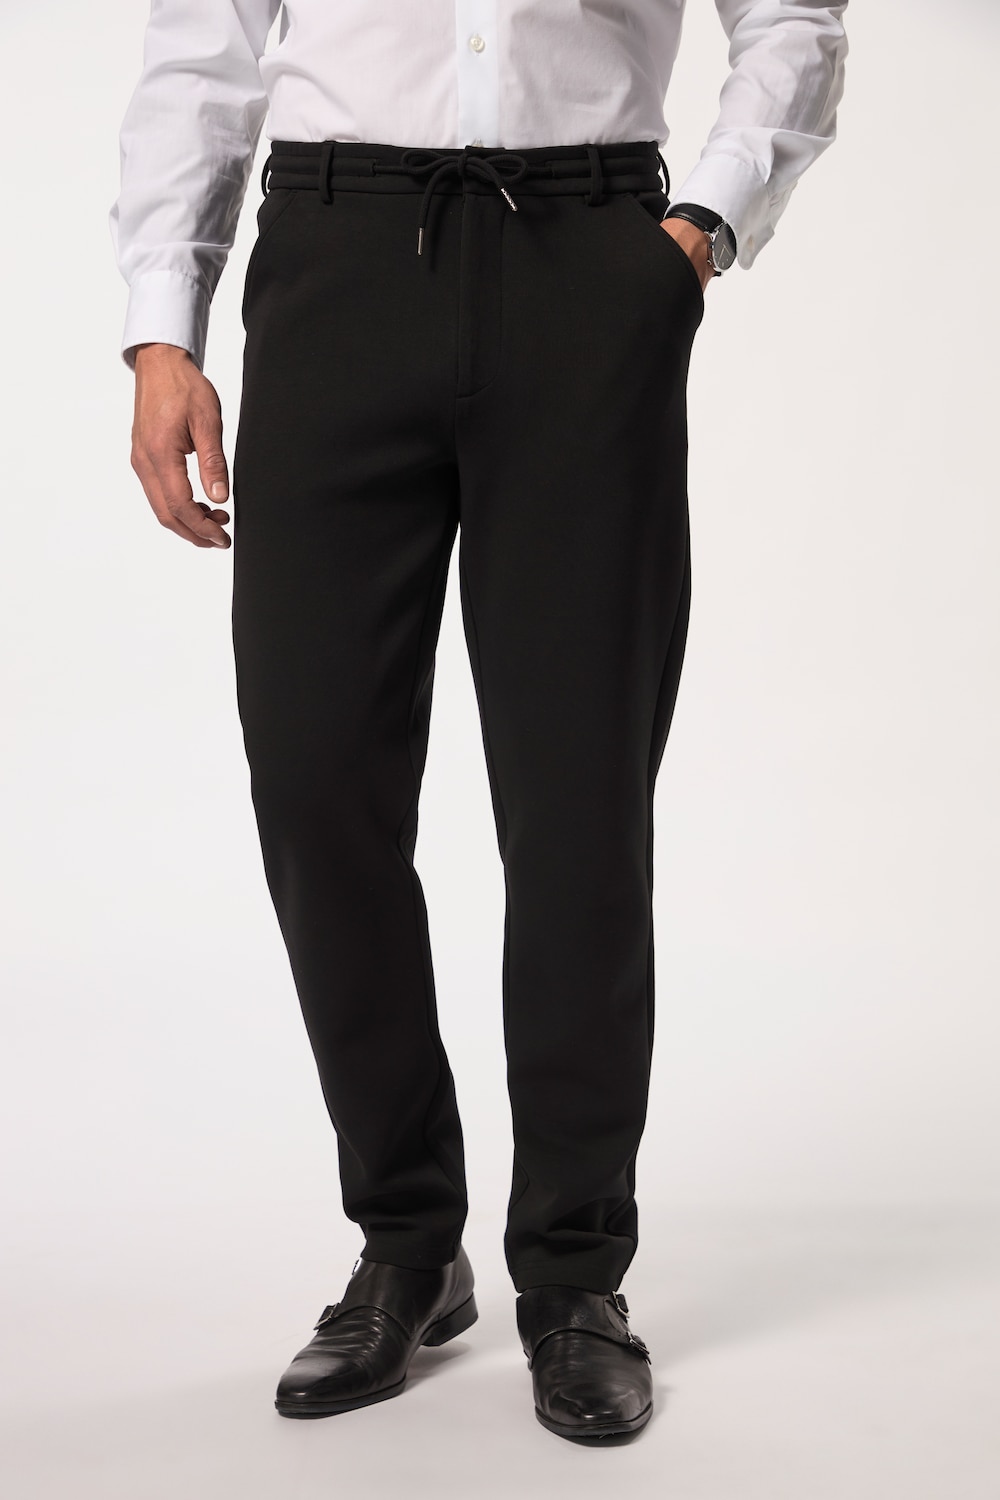 Große Größen Jersey-Hose, Herren, schwarz, Größe: 5XL, Baumwolle/Polyester, JP1880 von JP1880